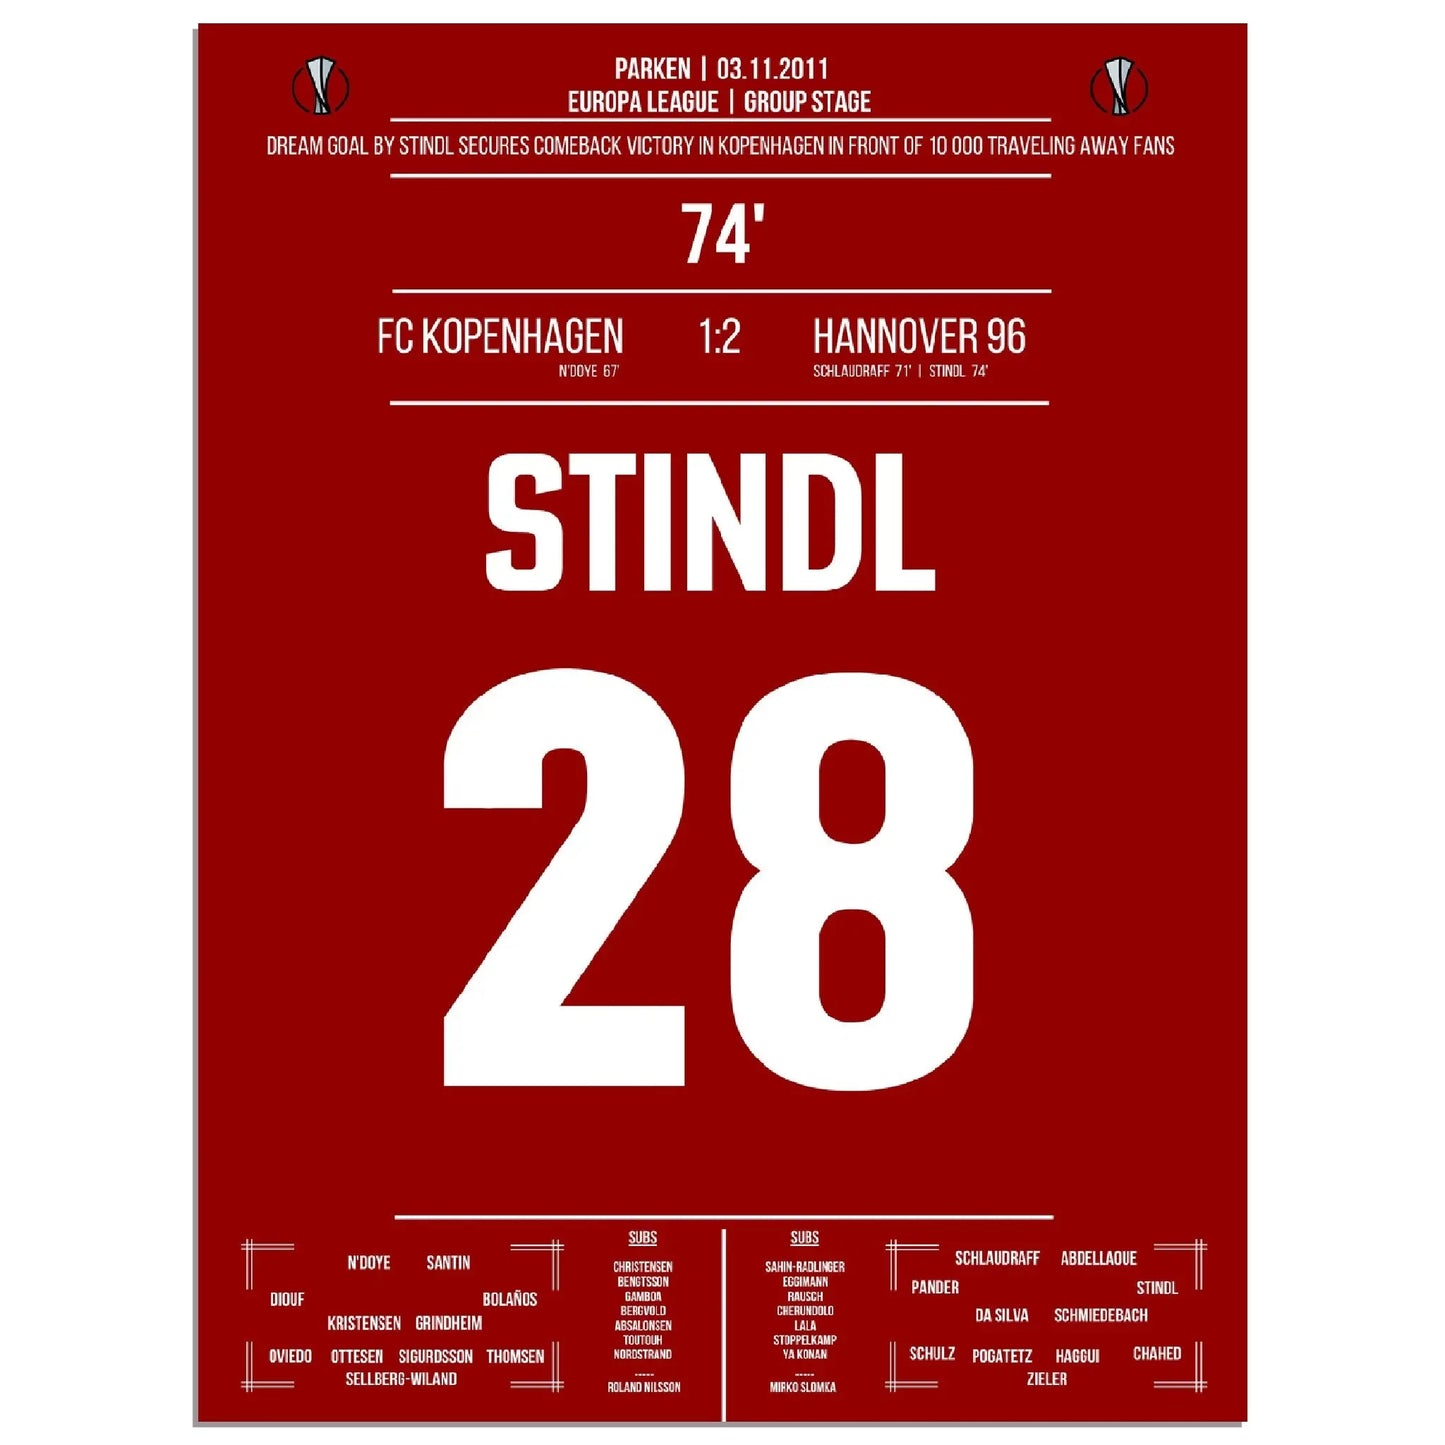 Stindl's Traumtor für Hannover in der Europa League 